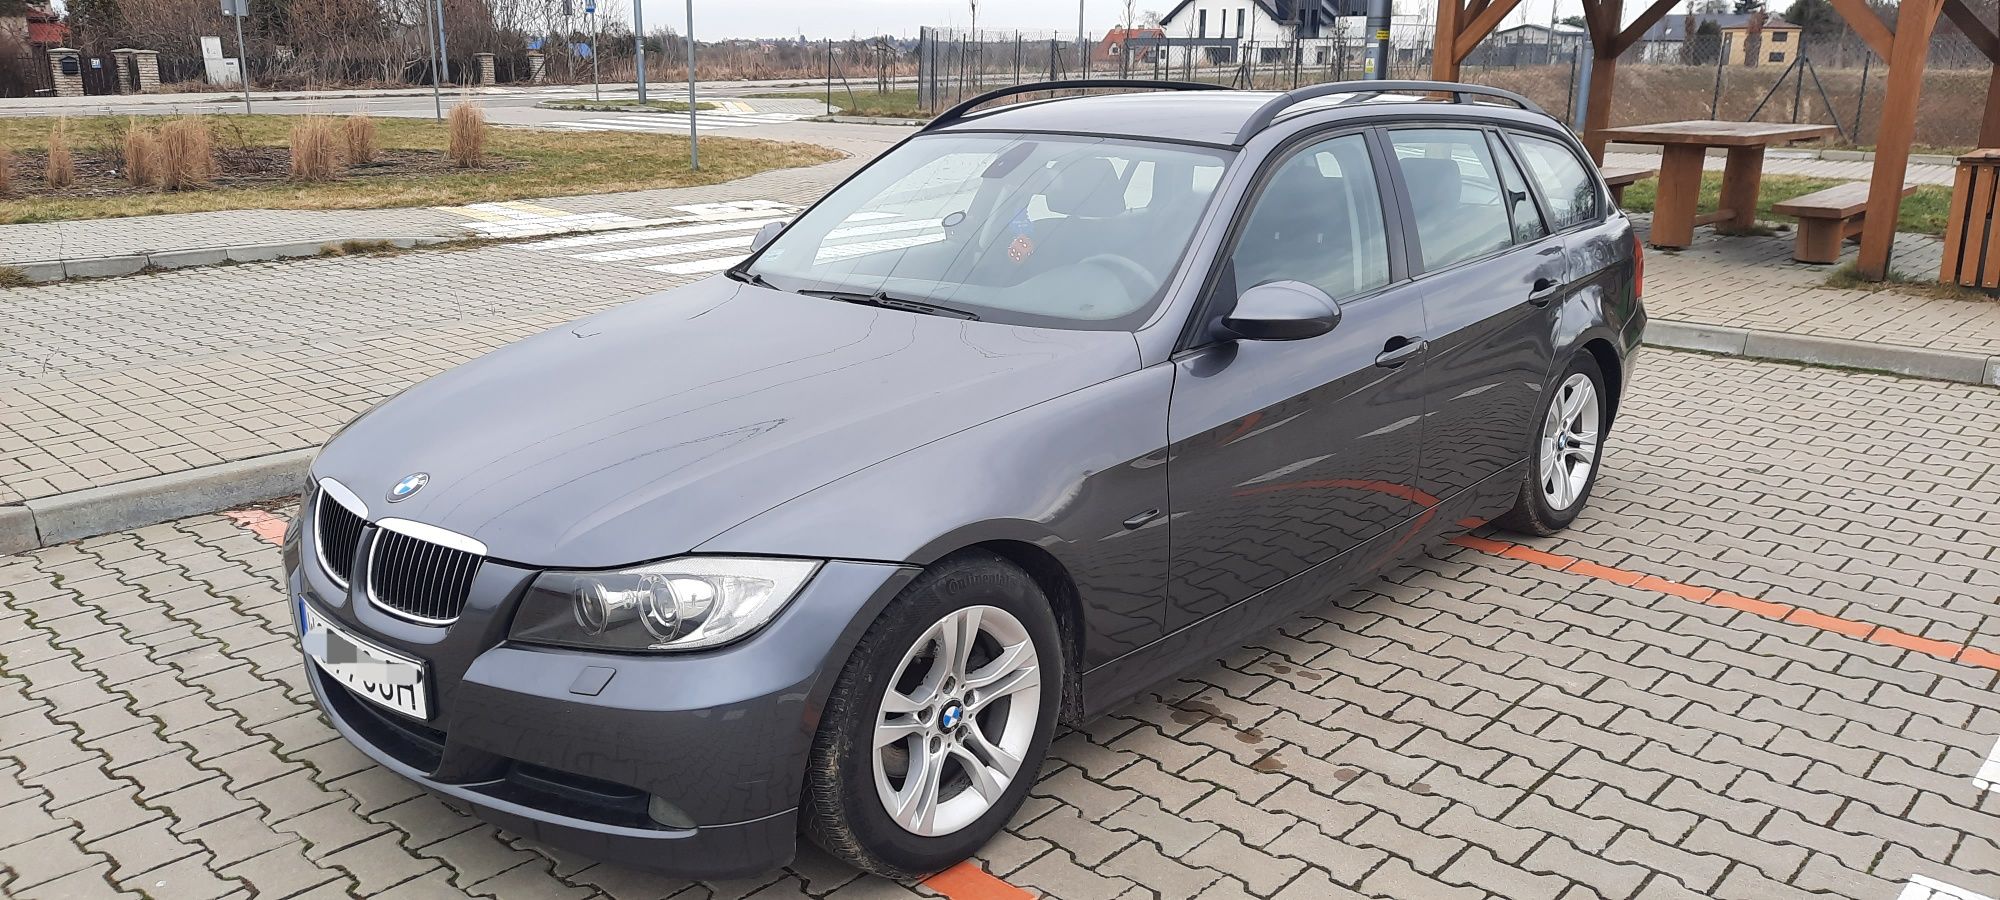 BMW E91 318i. 2007r. 2.0 Benzyna. Stan BDB.